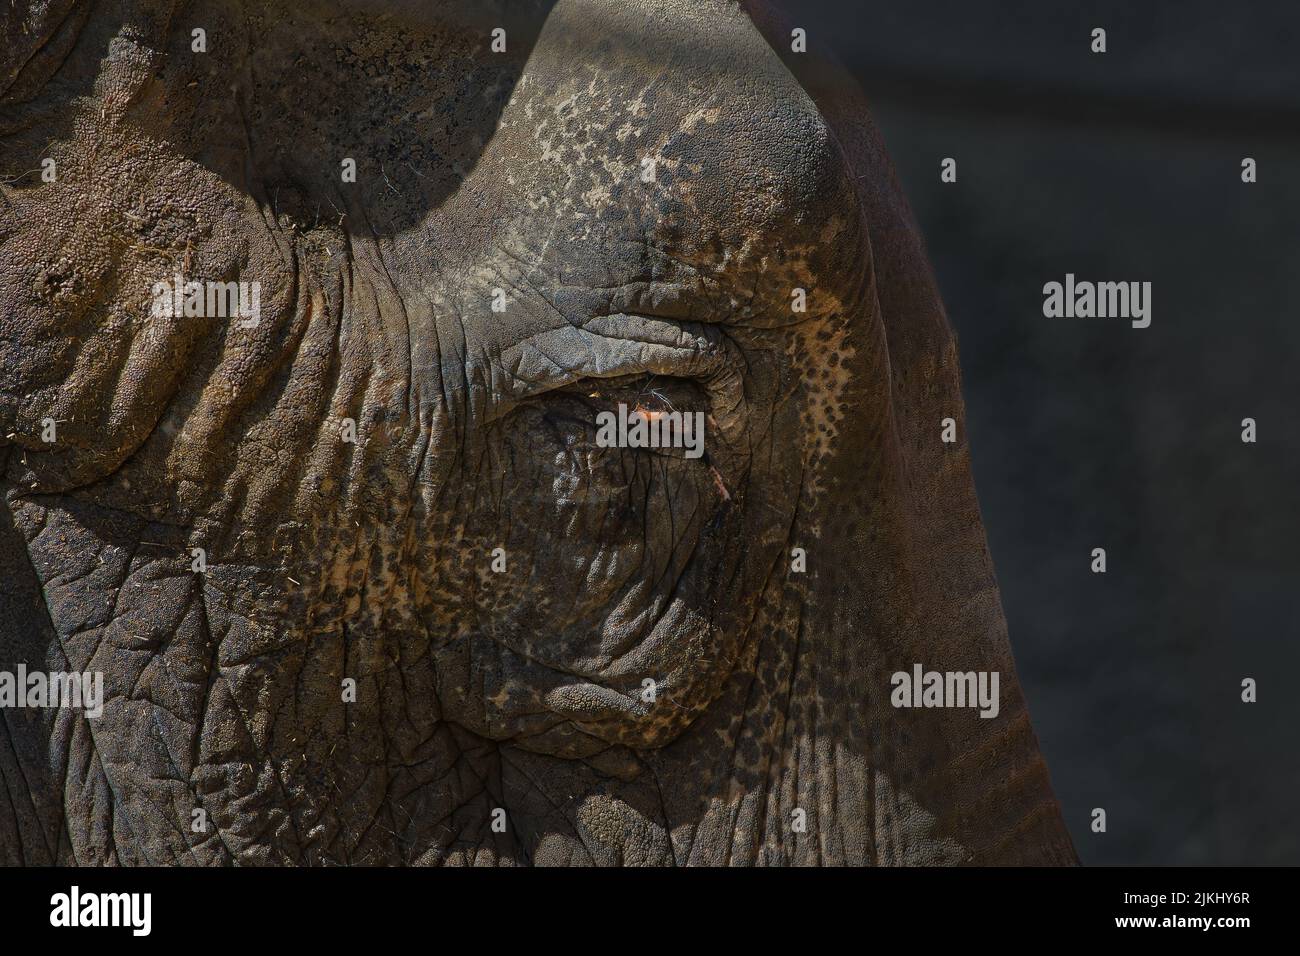 Ein Profil eines großen Elefanten mit einem orangefarbenen Auge Stockfoto